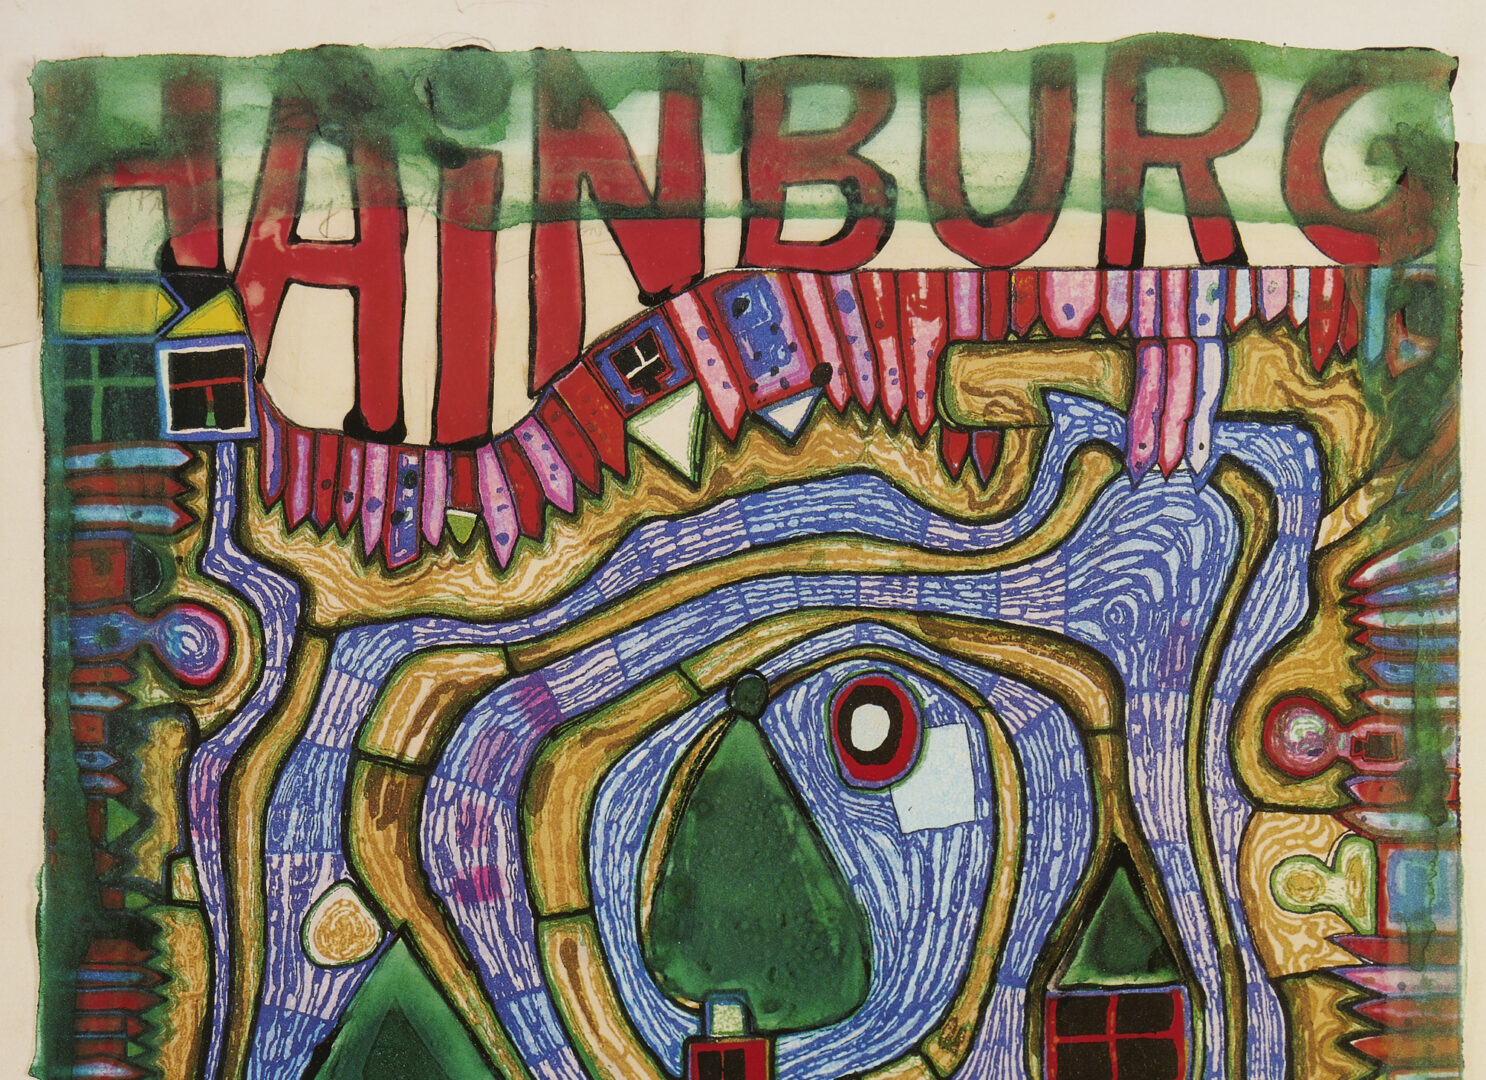 Lot 869: Friedensreich Hundertwasser Poster, Hainburg – Die Freie Natur Ist Unsere Freiheit